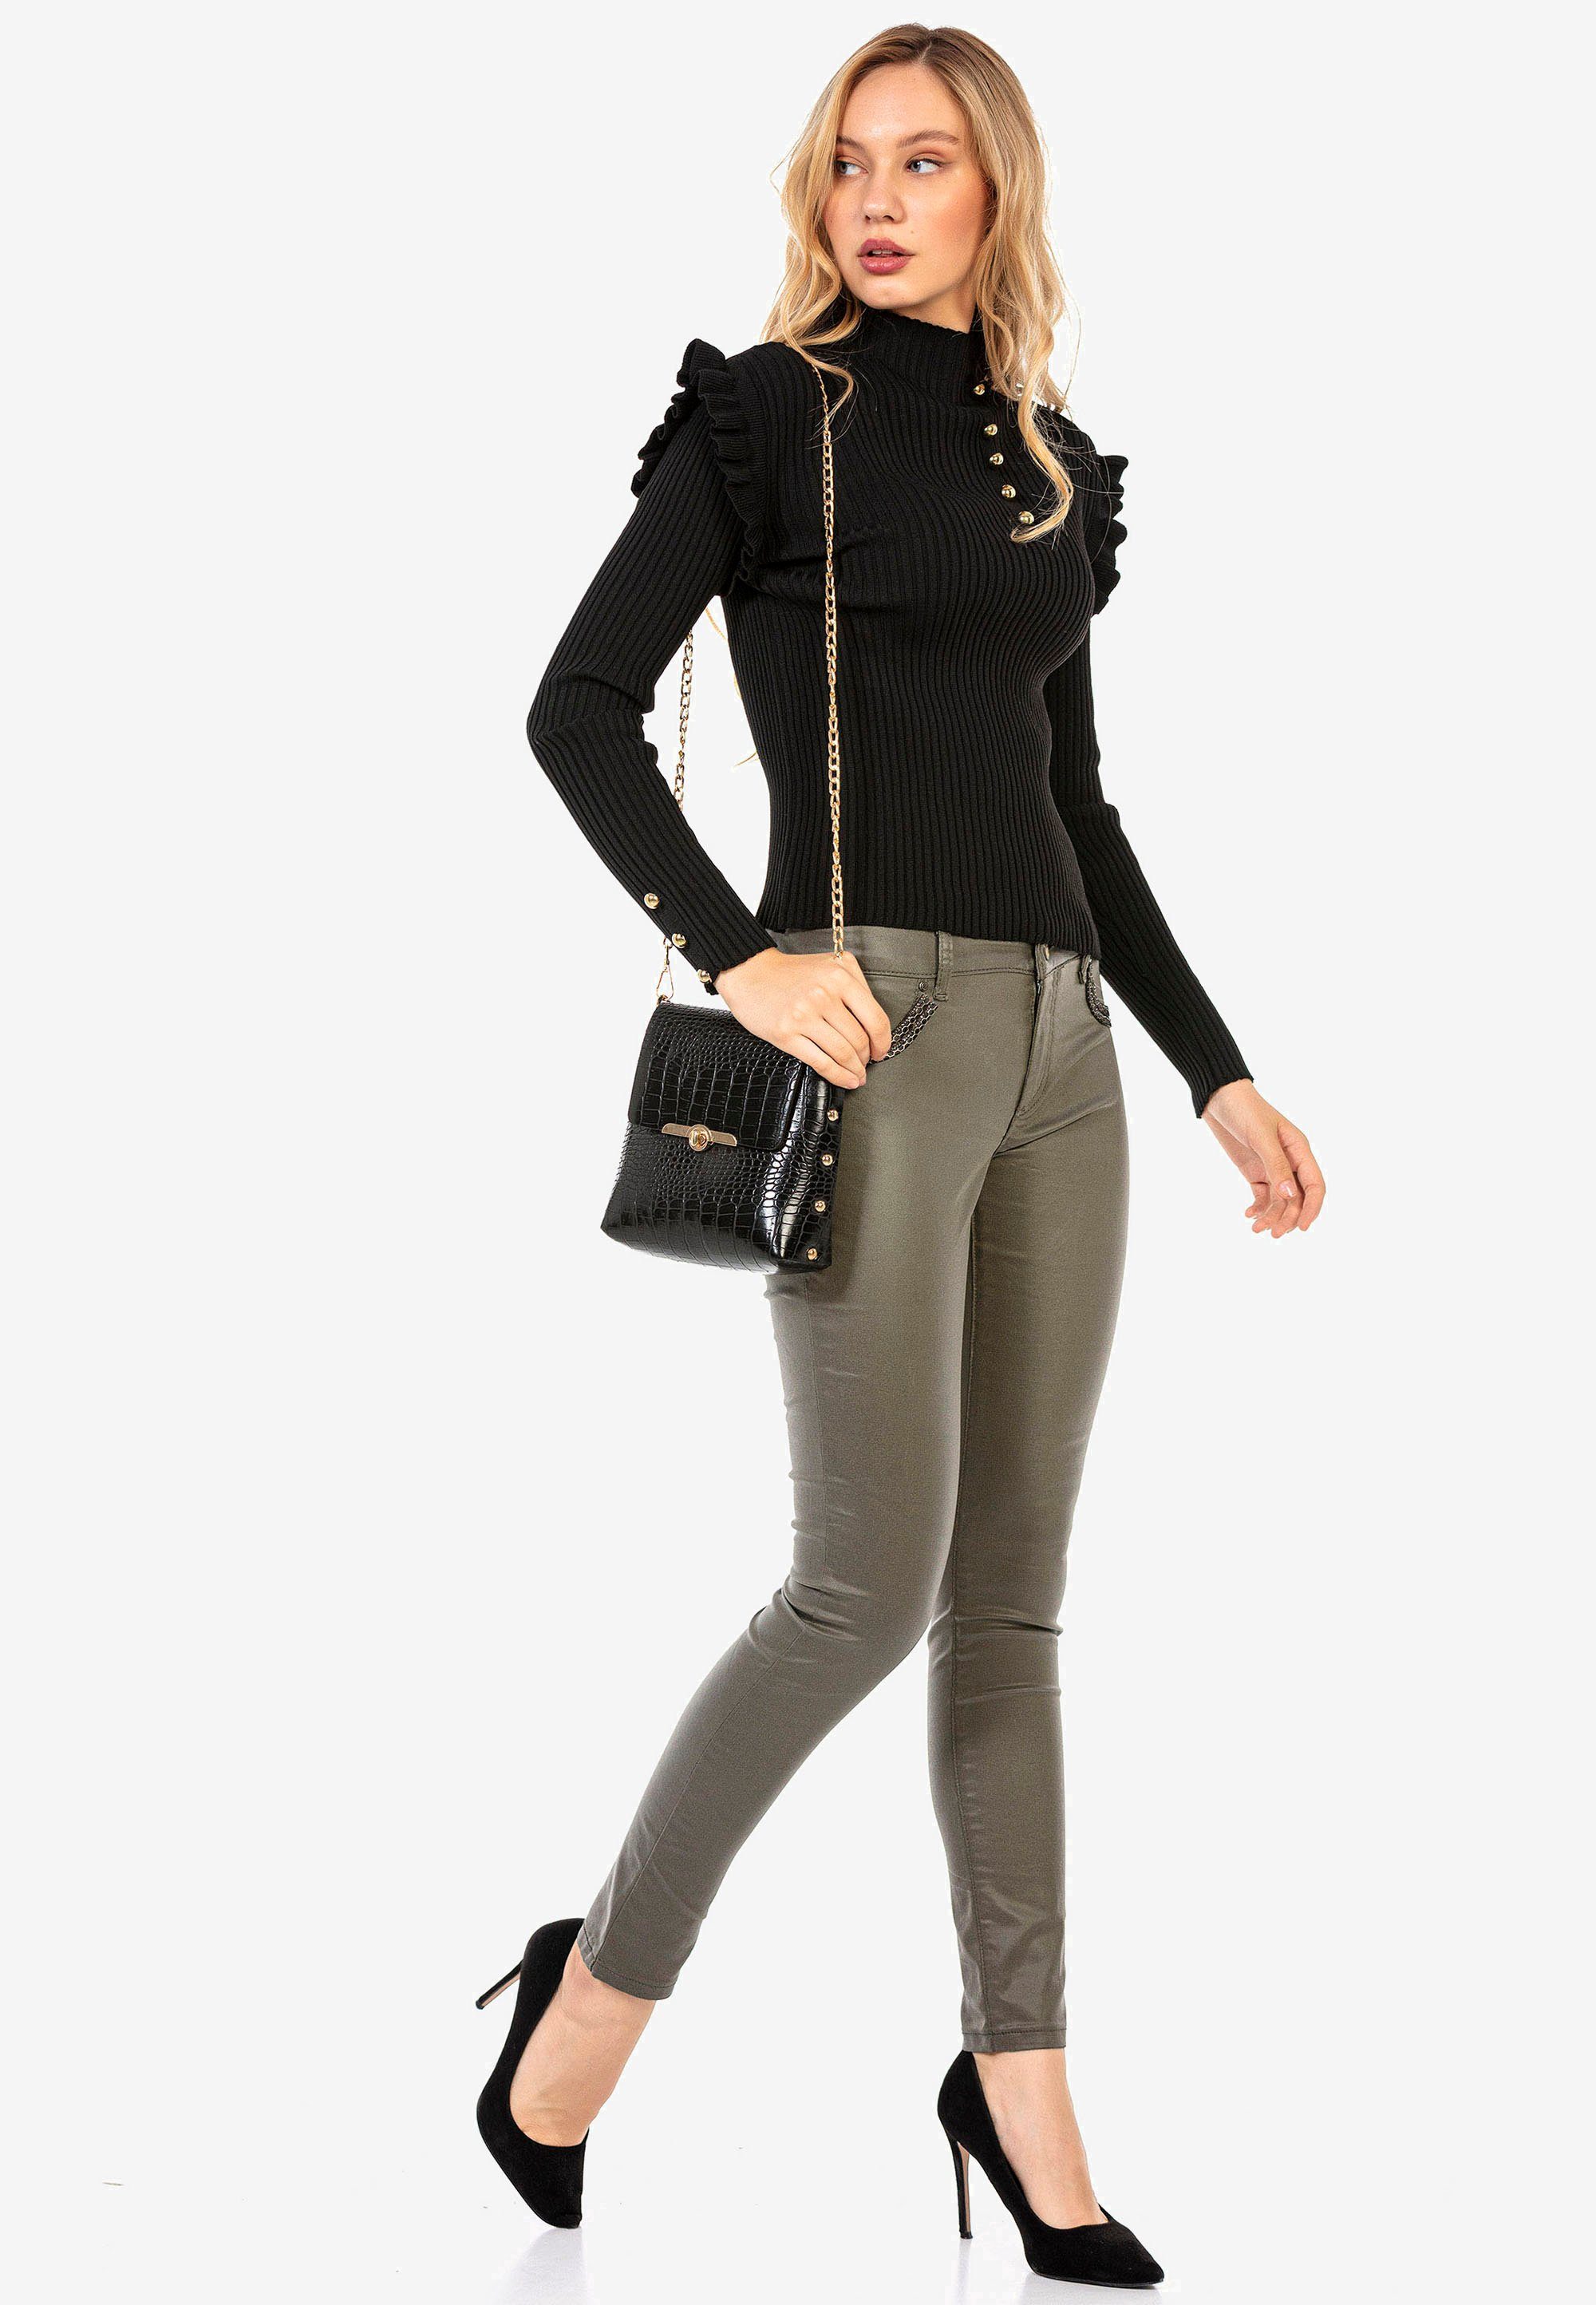 Damen Pullover Cipo & Baxx Strickpullover mit trendigen Zierknöpfen